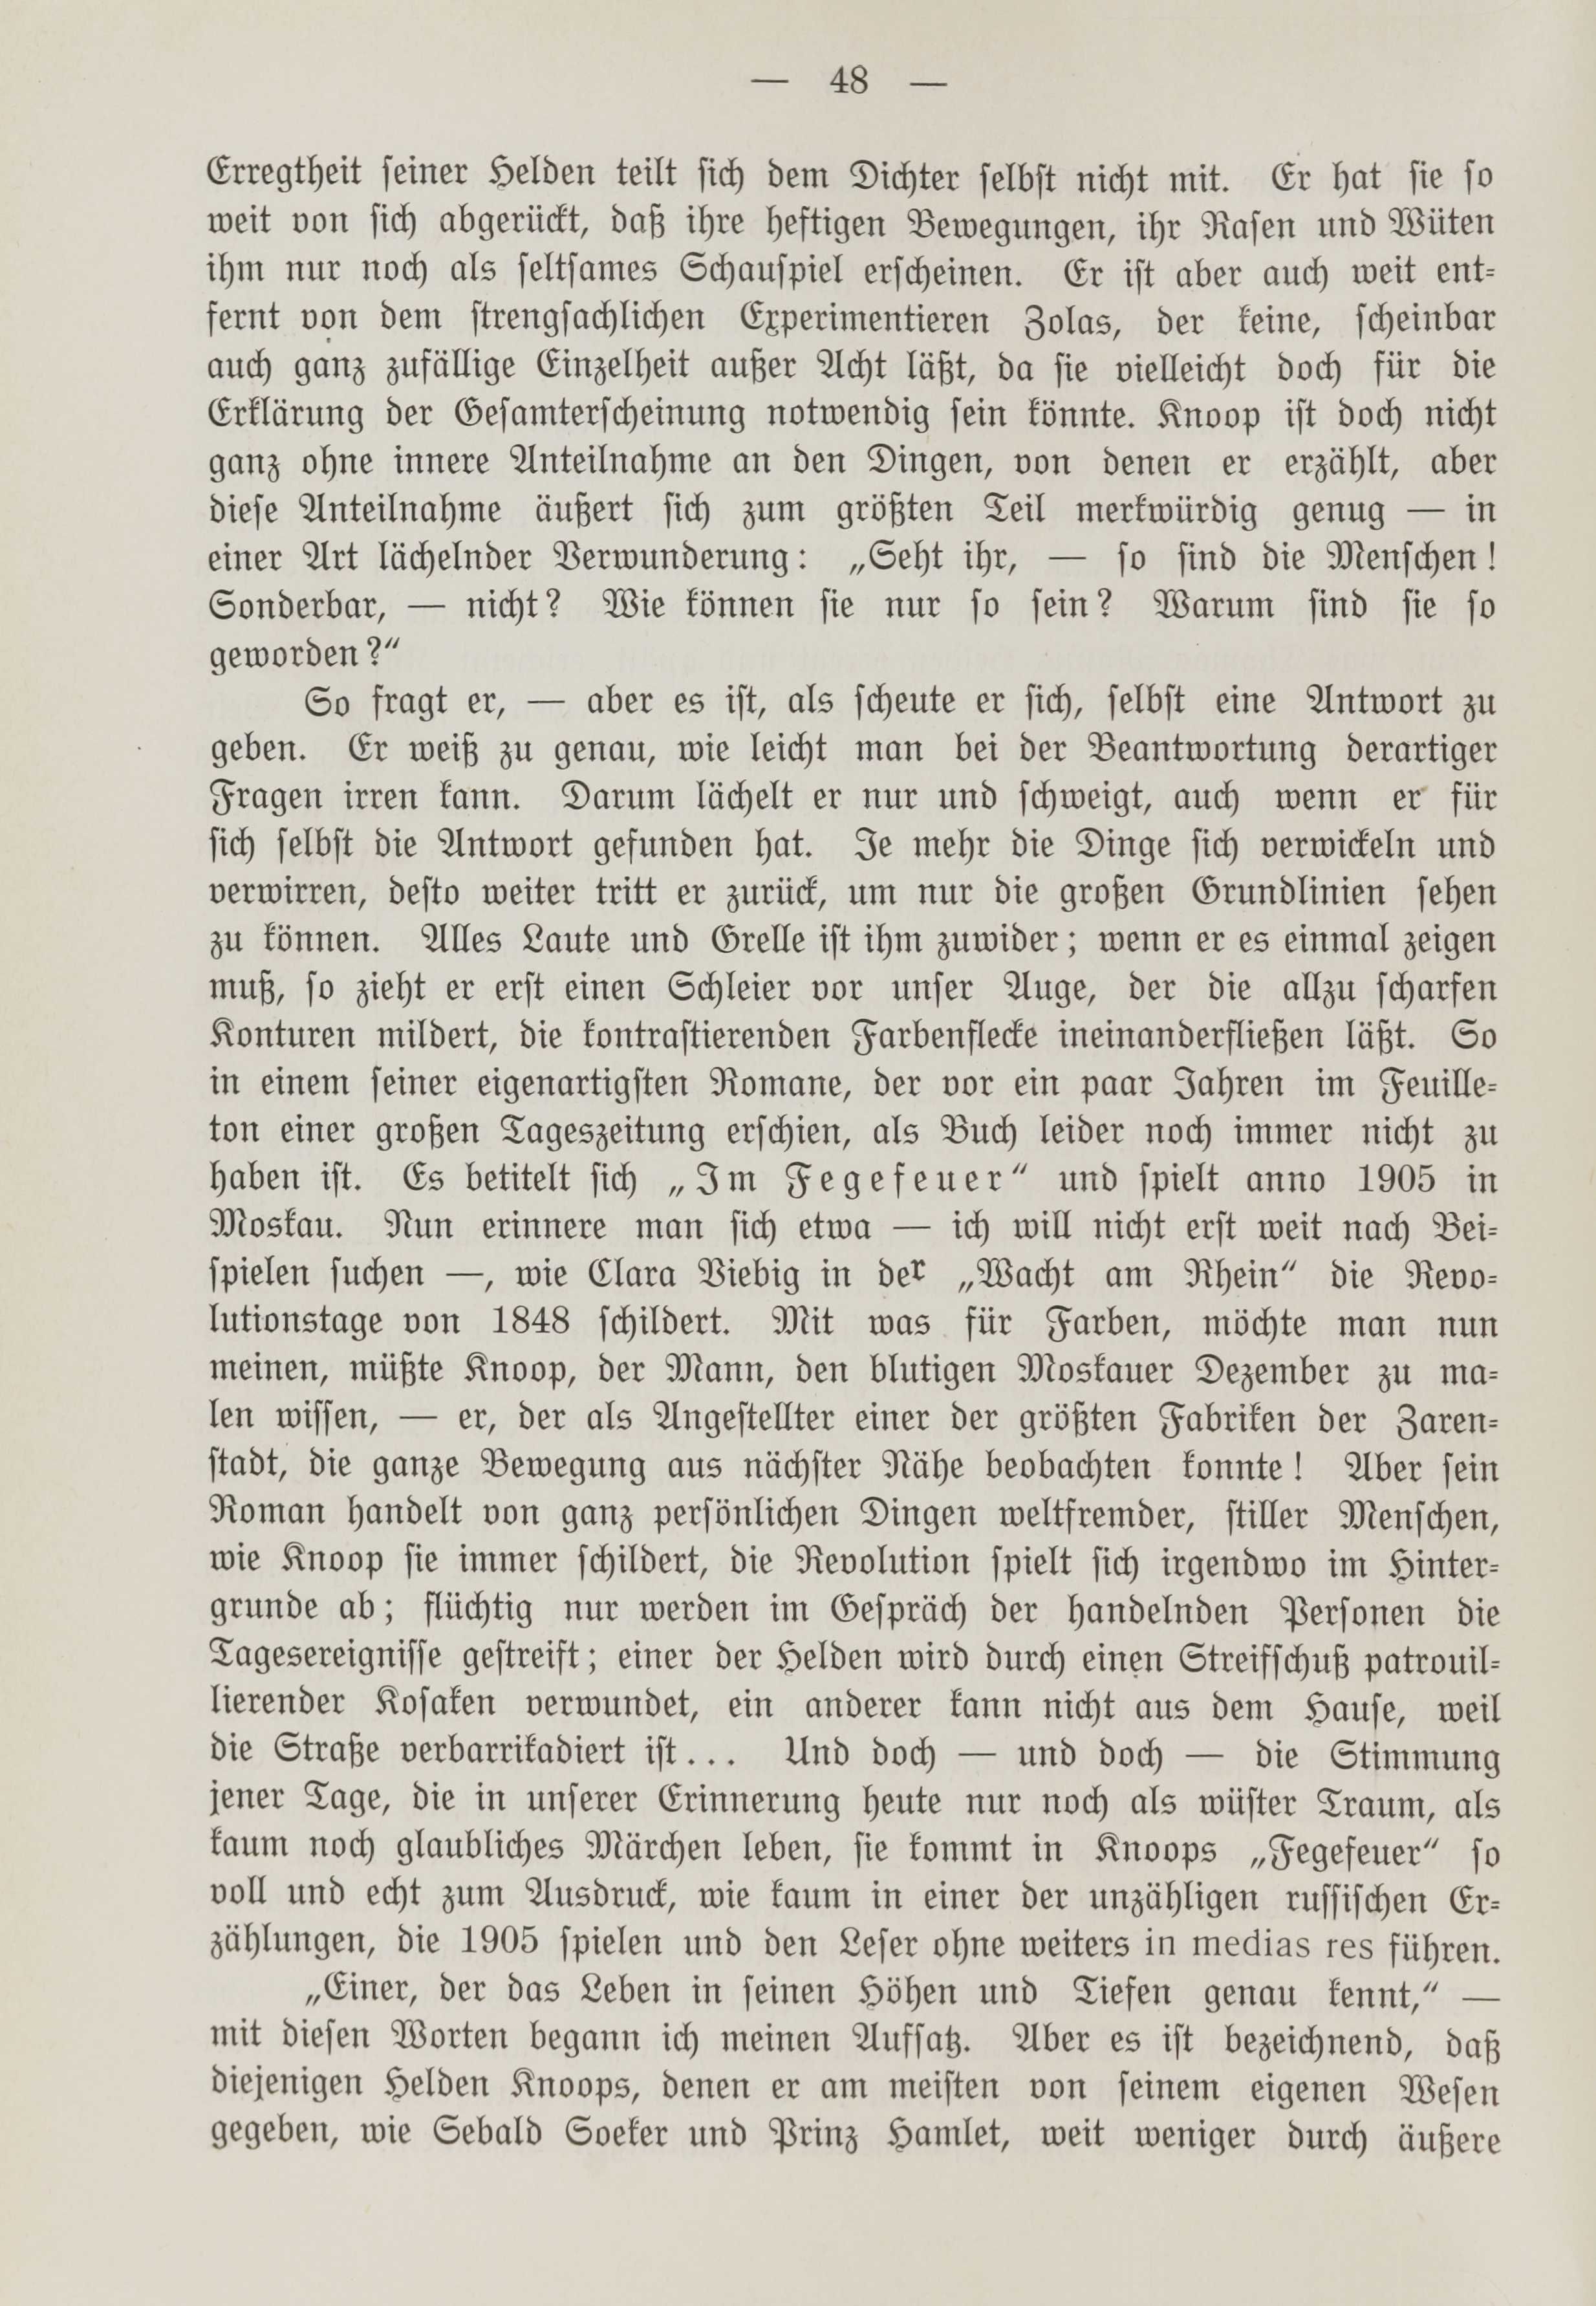 Deutsche Monatsschrift für Russland [1] (1912) | 55. (48) Haupttext